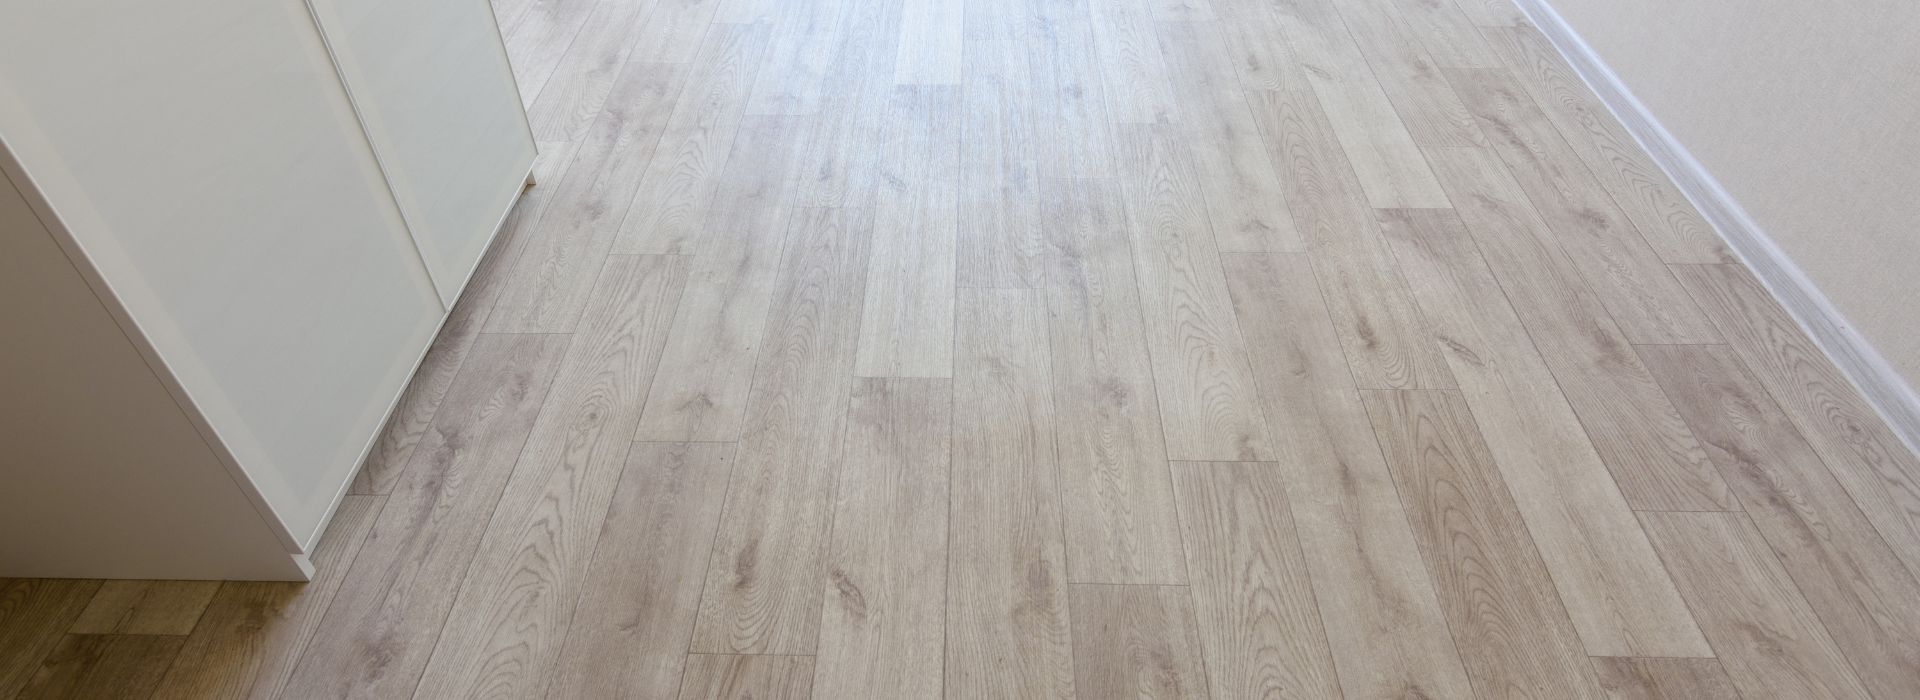 What is Linoleum Flooring